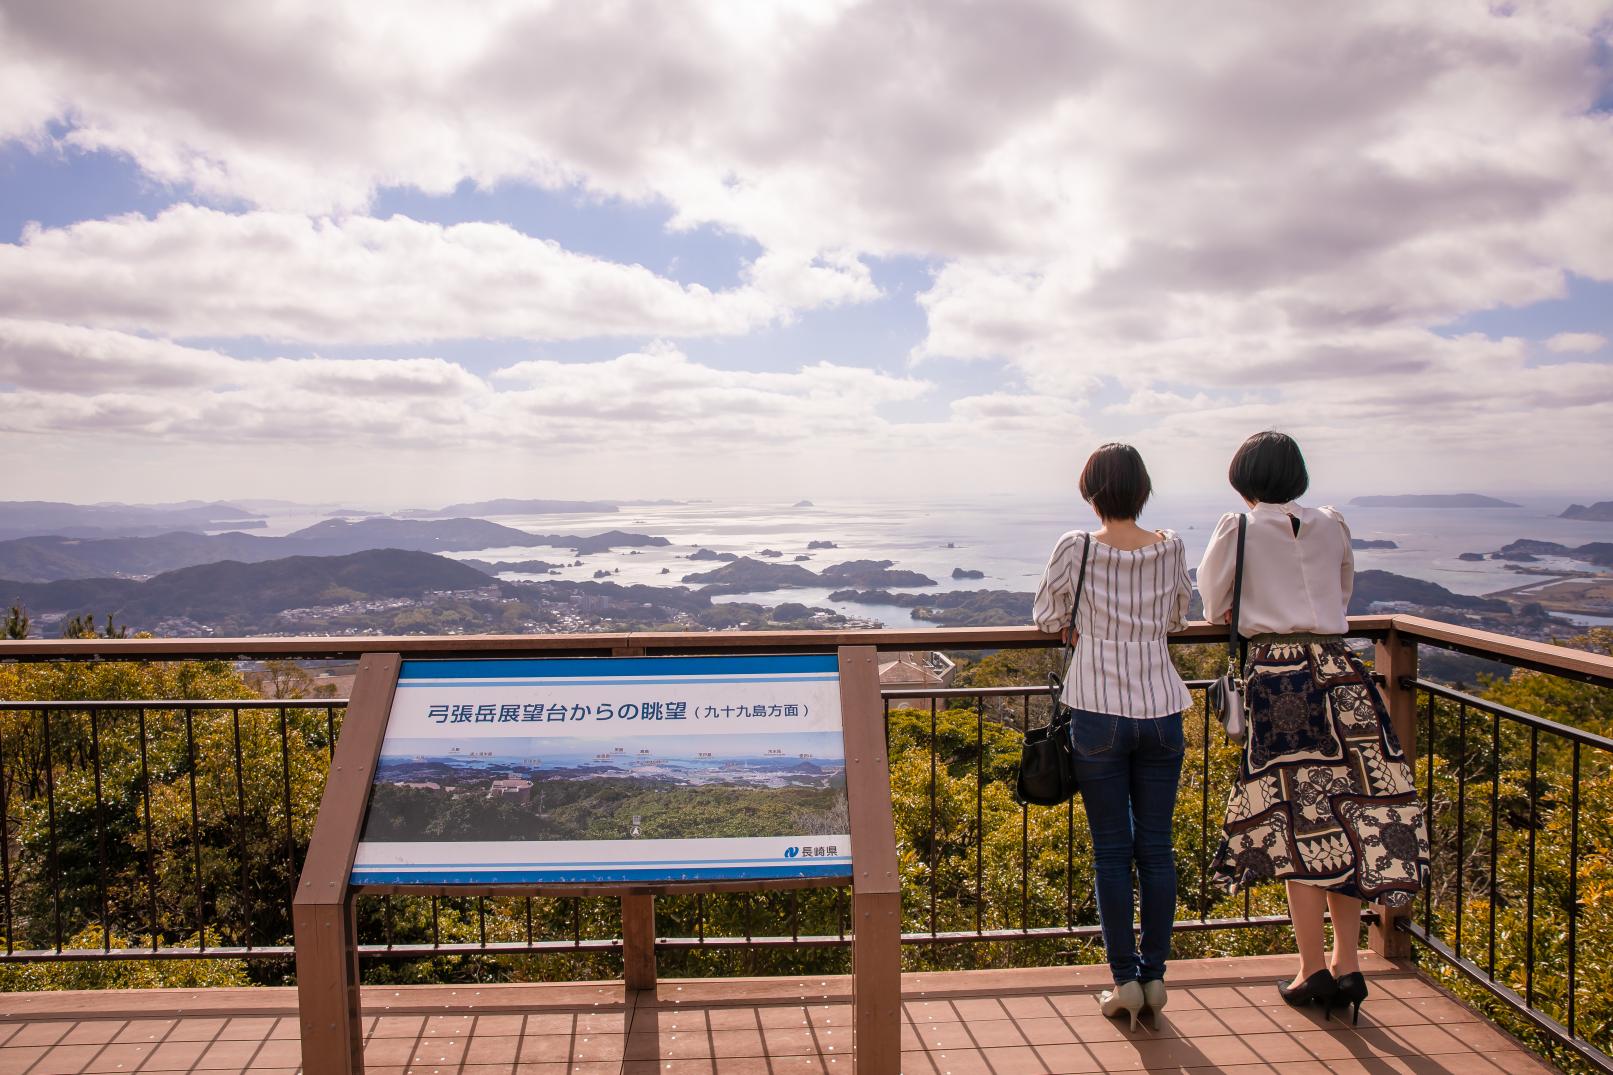 【タクシープラン】港まち佐世保を弓張岳展望台から眺めるコース-3